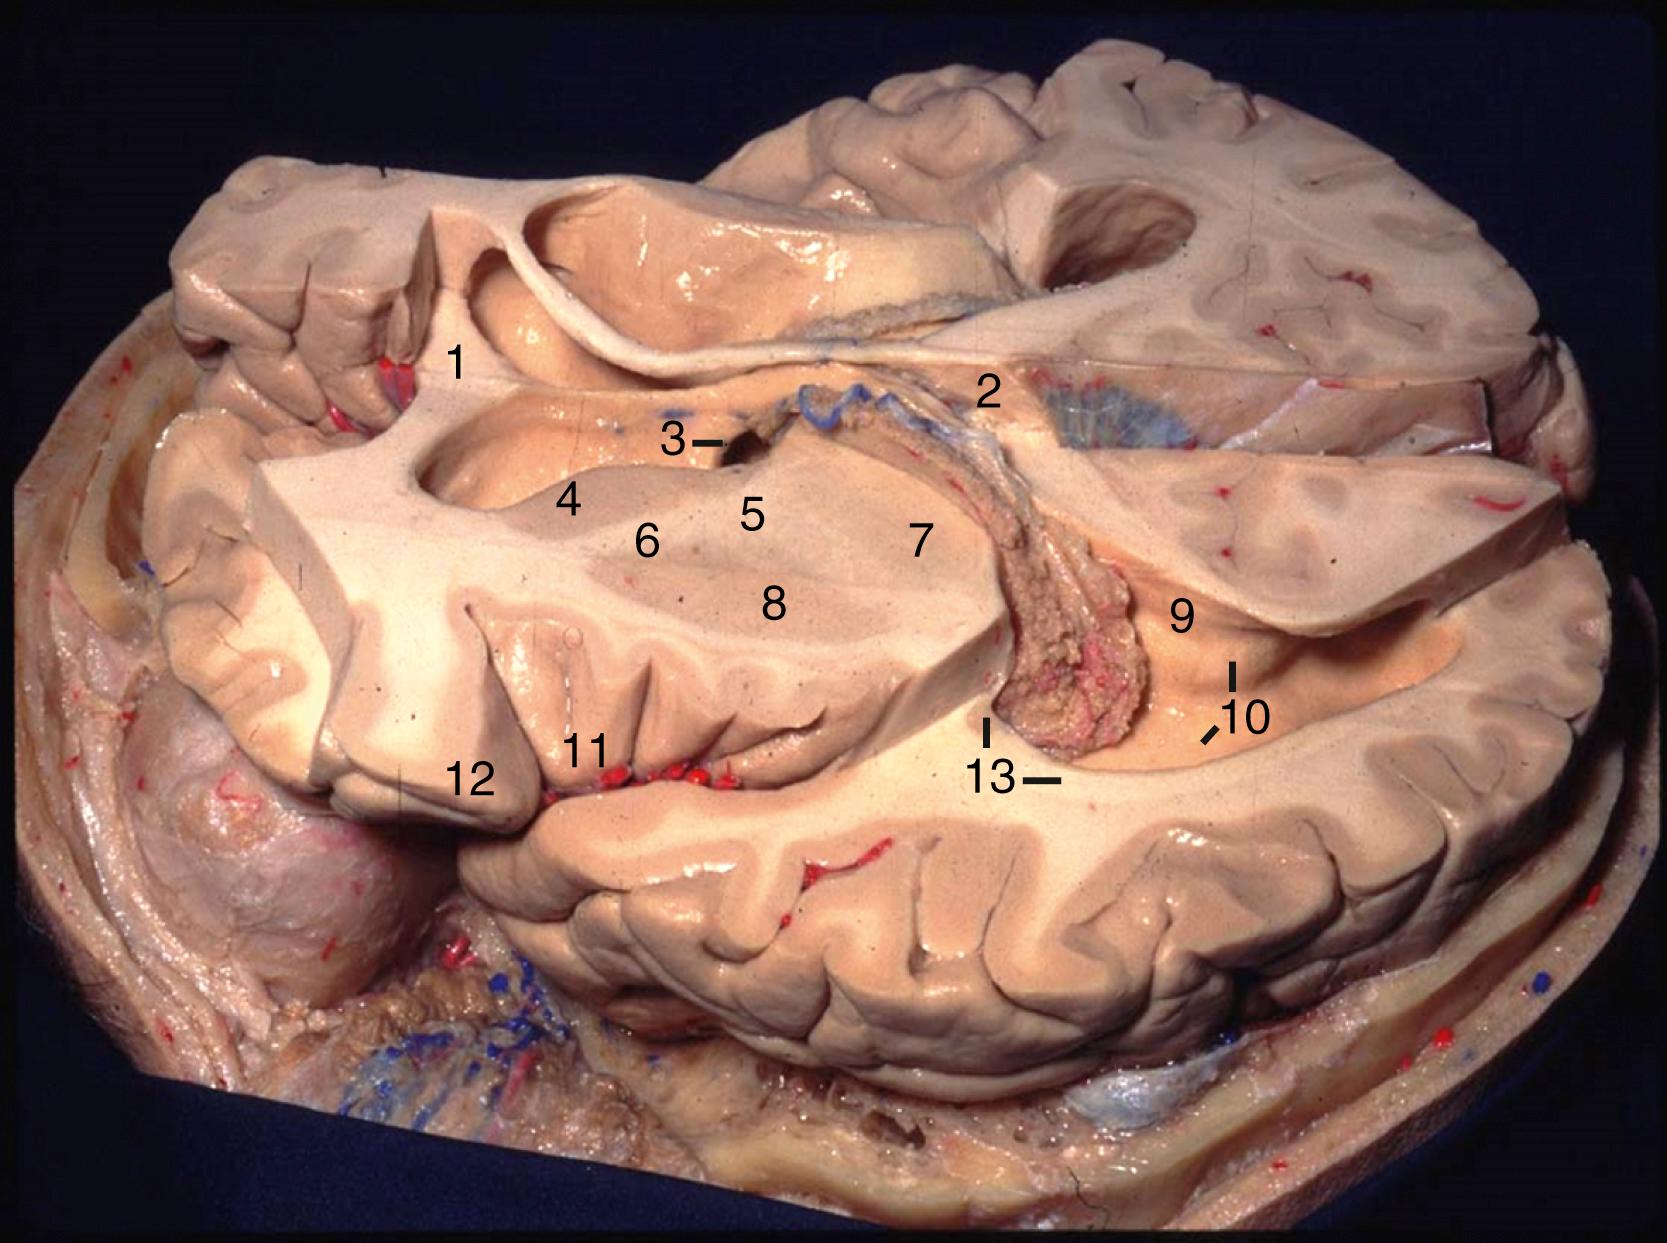 eFigure 2.2, Superolateral view. 1, Genu of corpus callosum; 2, splenium of corpus callosum; 3, foramen of Monro and column of fornix; 4, head of caudate nucleus; 5, genu of internal capsule; 6, anterior limb of internal capsule; 7, thalamus; 8, lentiform nucleus; 9, bulb of callosum; 10, calcar avis and collateral trigone; 11, apex of insula; 12, pars orbitalis; 13, tail of caudate nucleus and tapetum.